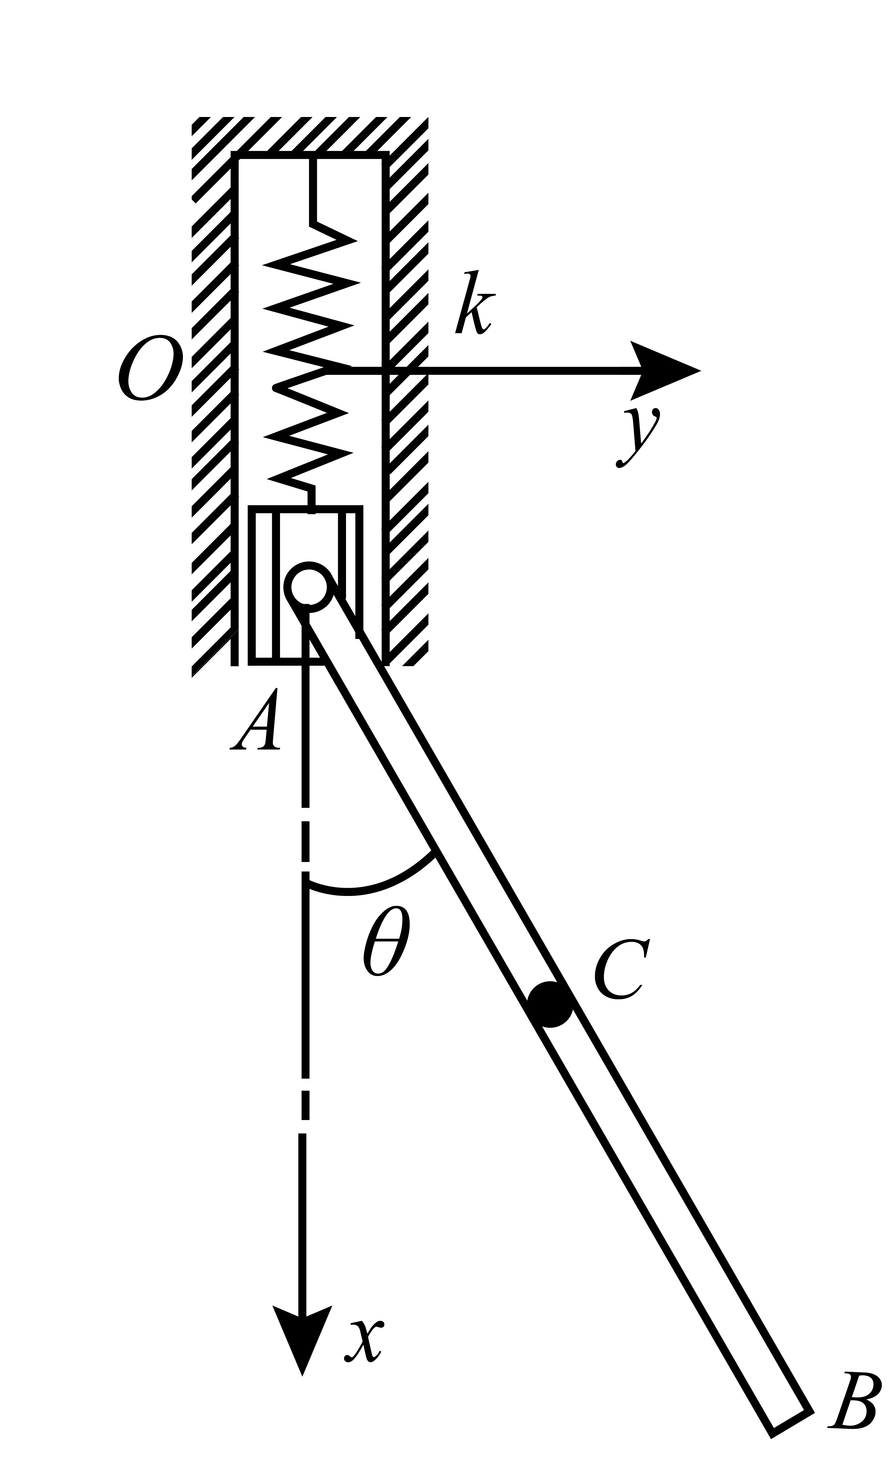 均质细杆AB长为l， 质量为m，其A端与刚度系数为k的弹簧相连，可沿铅垂方向振动， 同时杆AB还可以